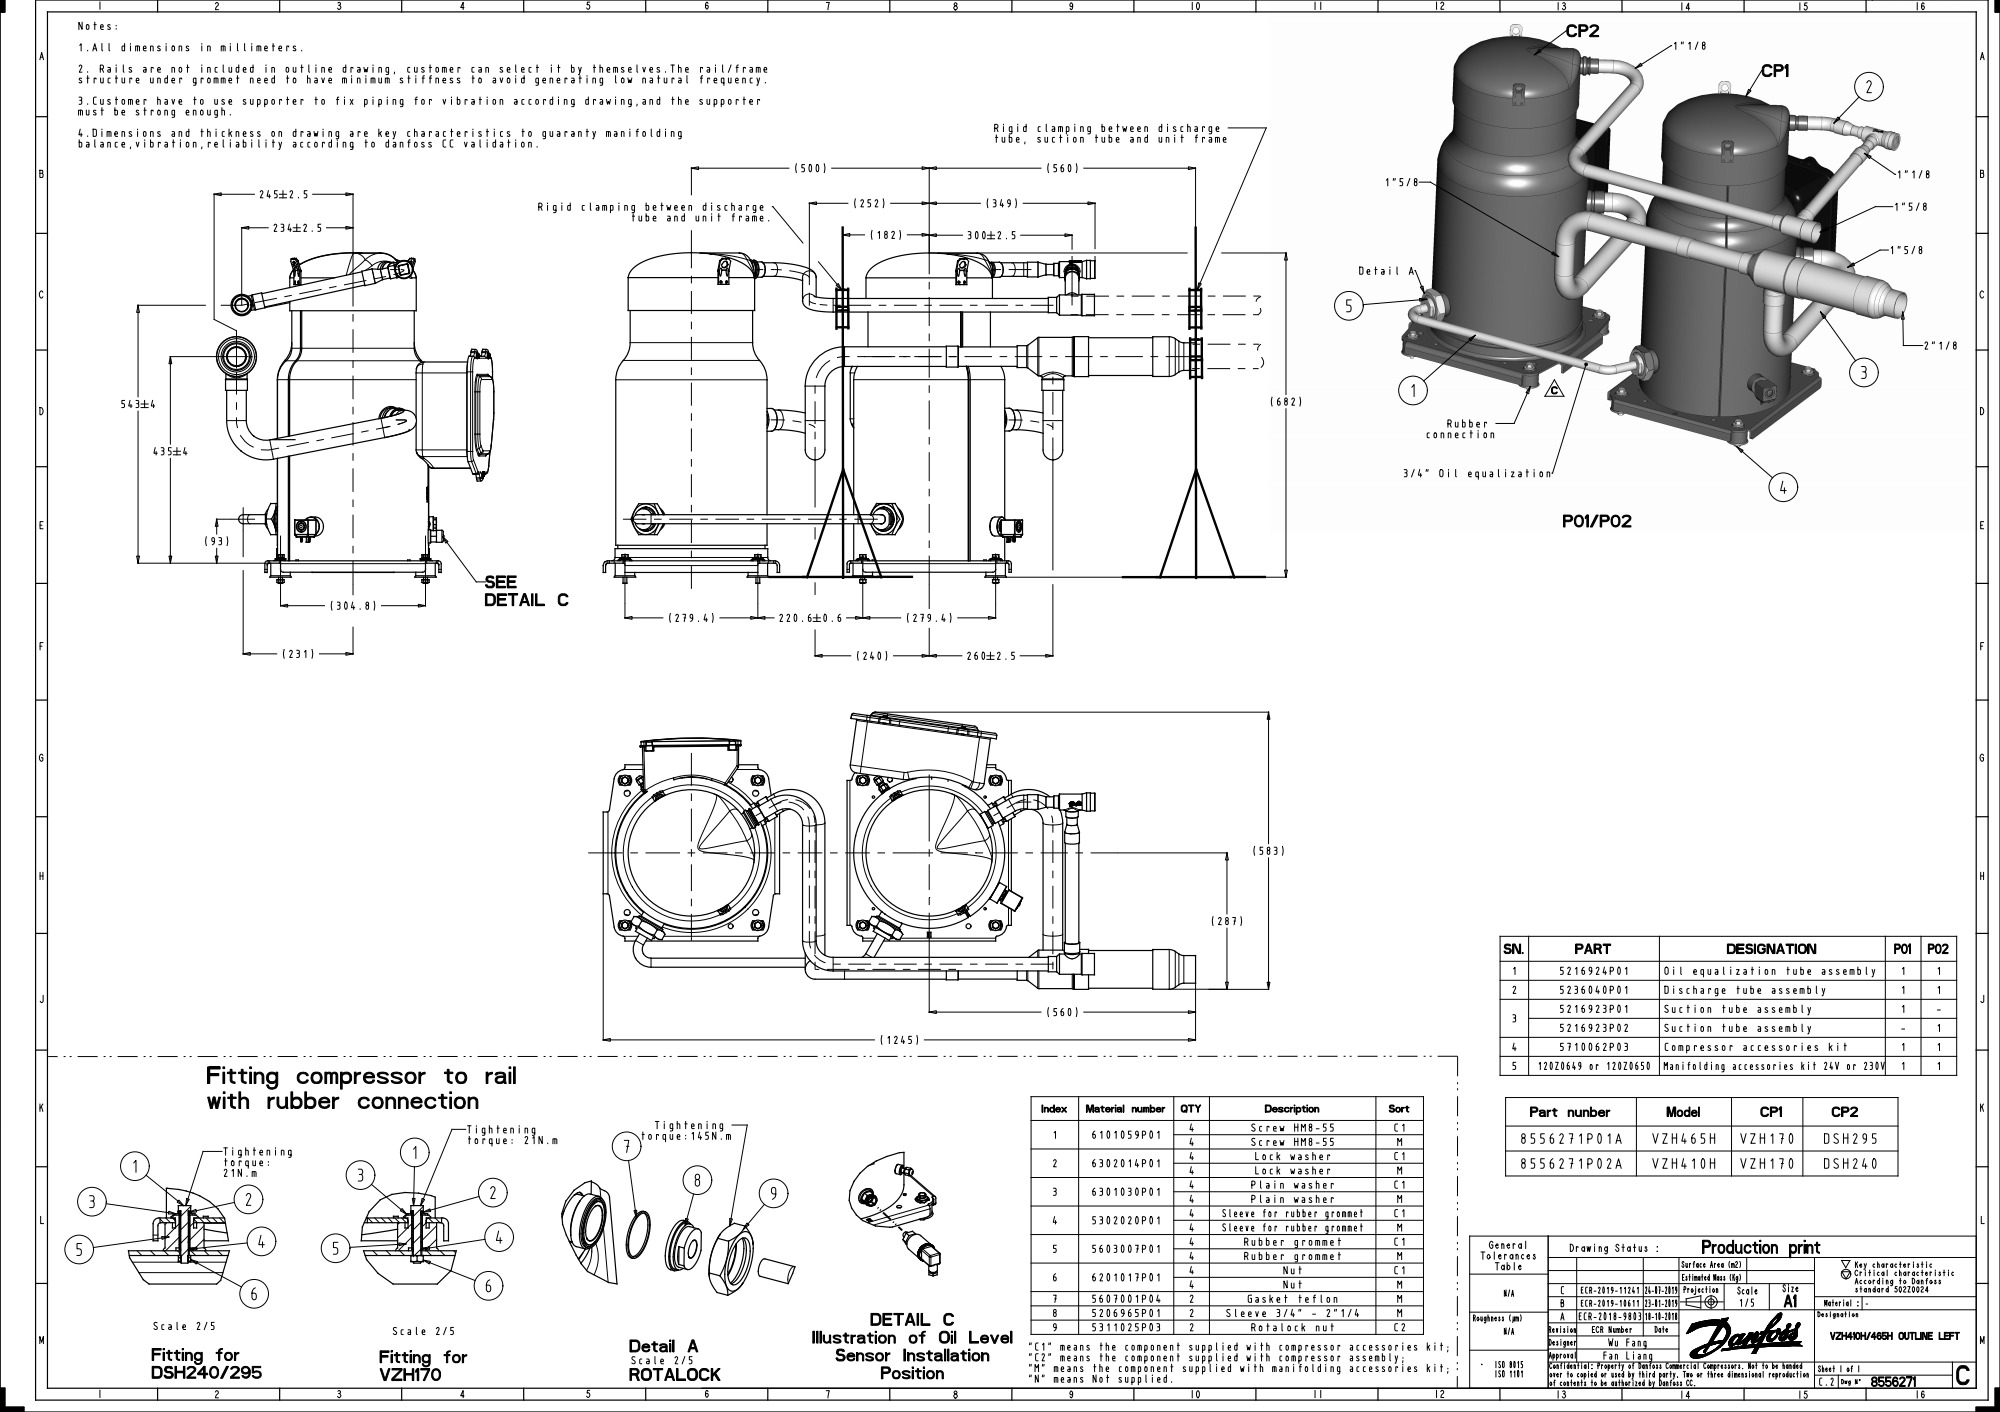 IMG319151219411_preview.jpg | VZH — герметичные спиральные компрессоры с частотным регулированием производительности Данфосс (Danfoss) | официальный сайт Danfoss Россия